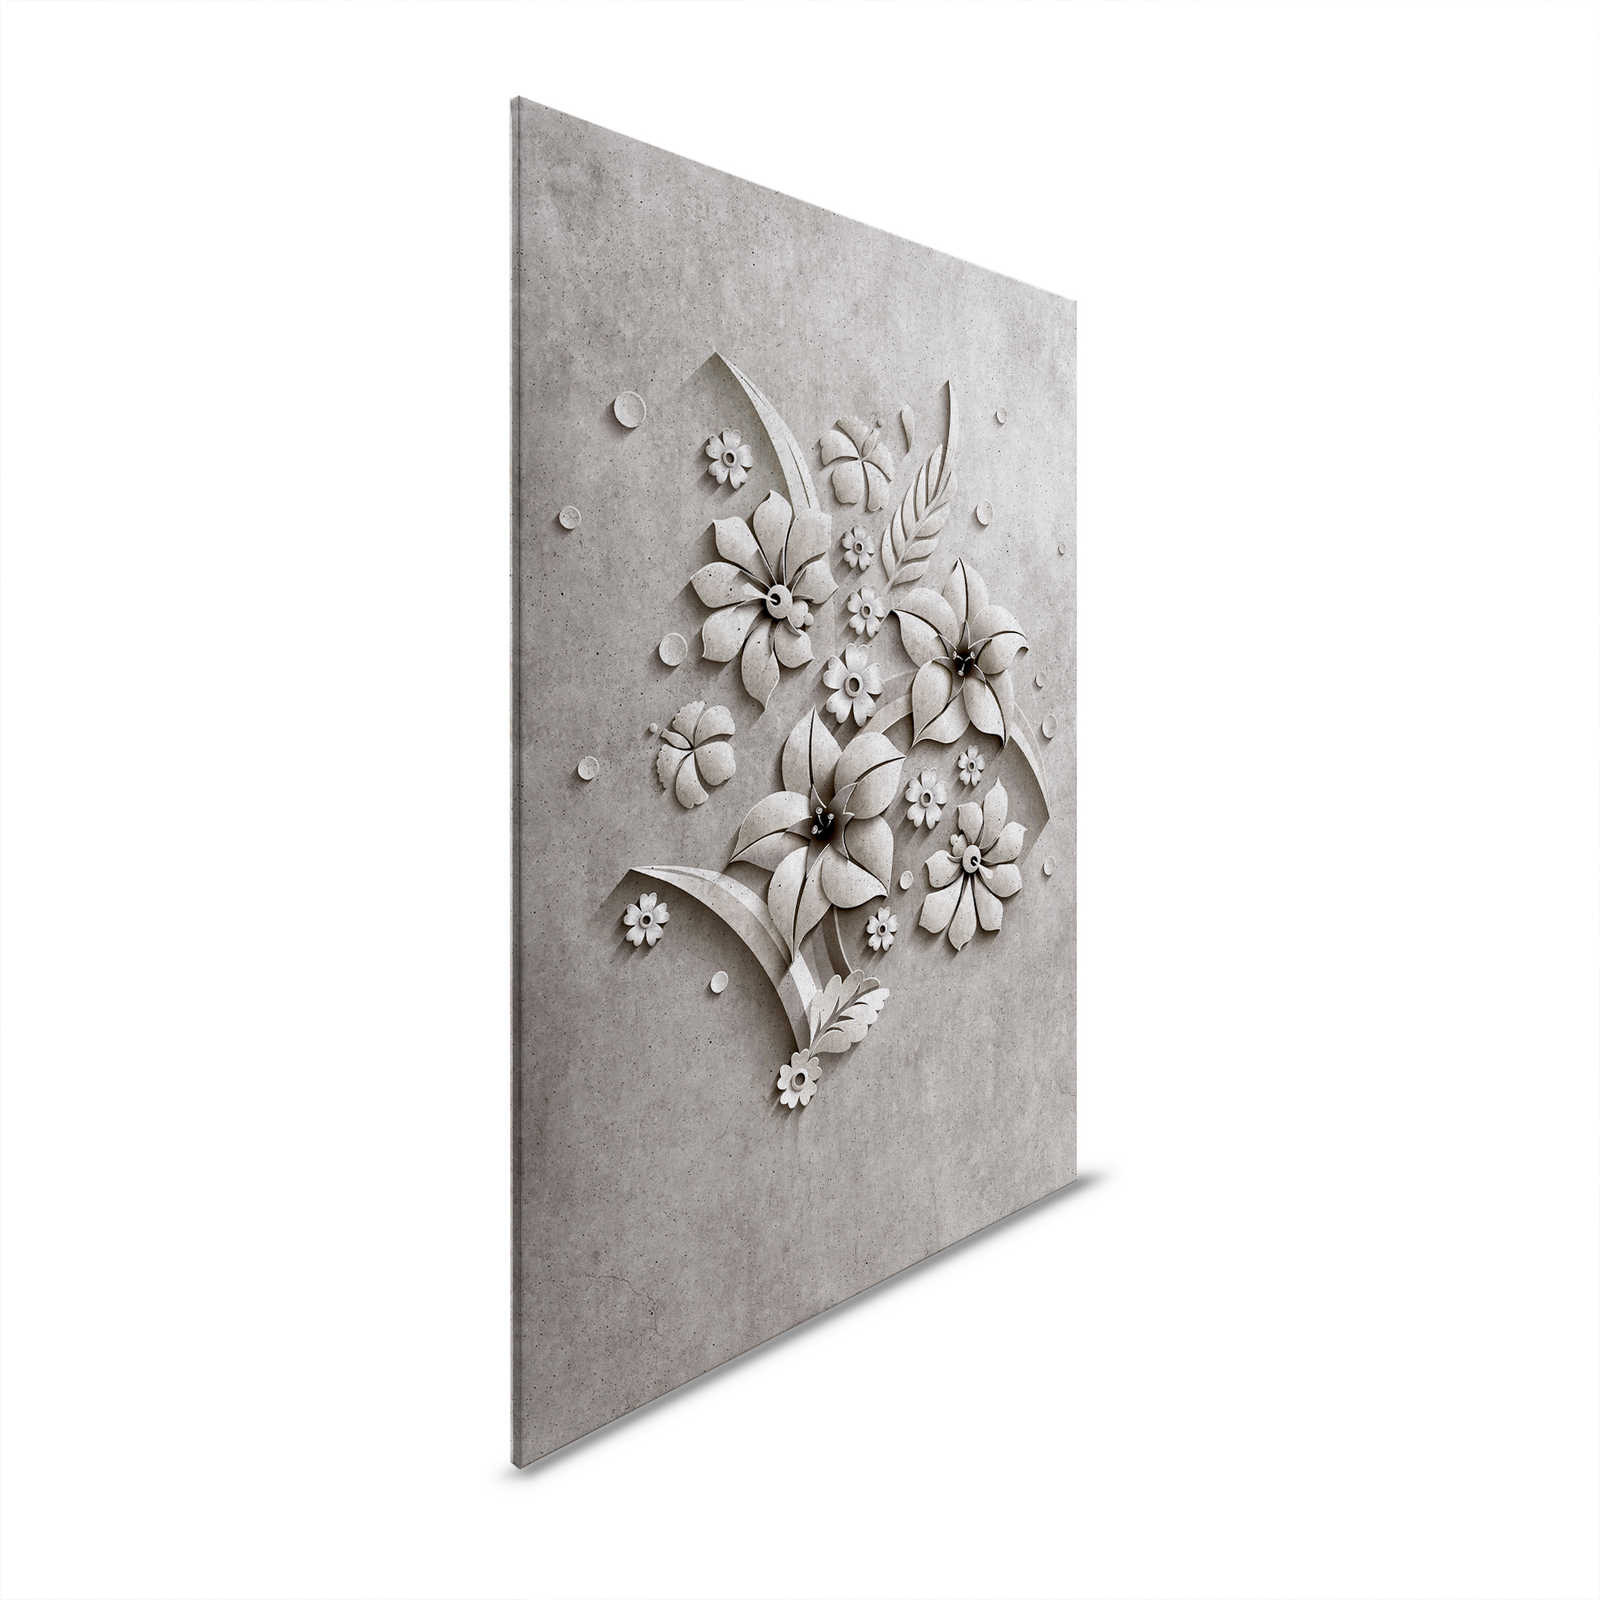 Rilievo 1 - Pittura su tela in struttura di cemento di un rilievo floreale - 0,90 m x 0,60 m
